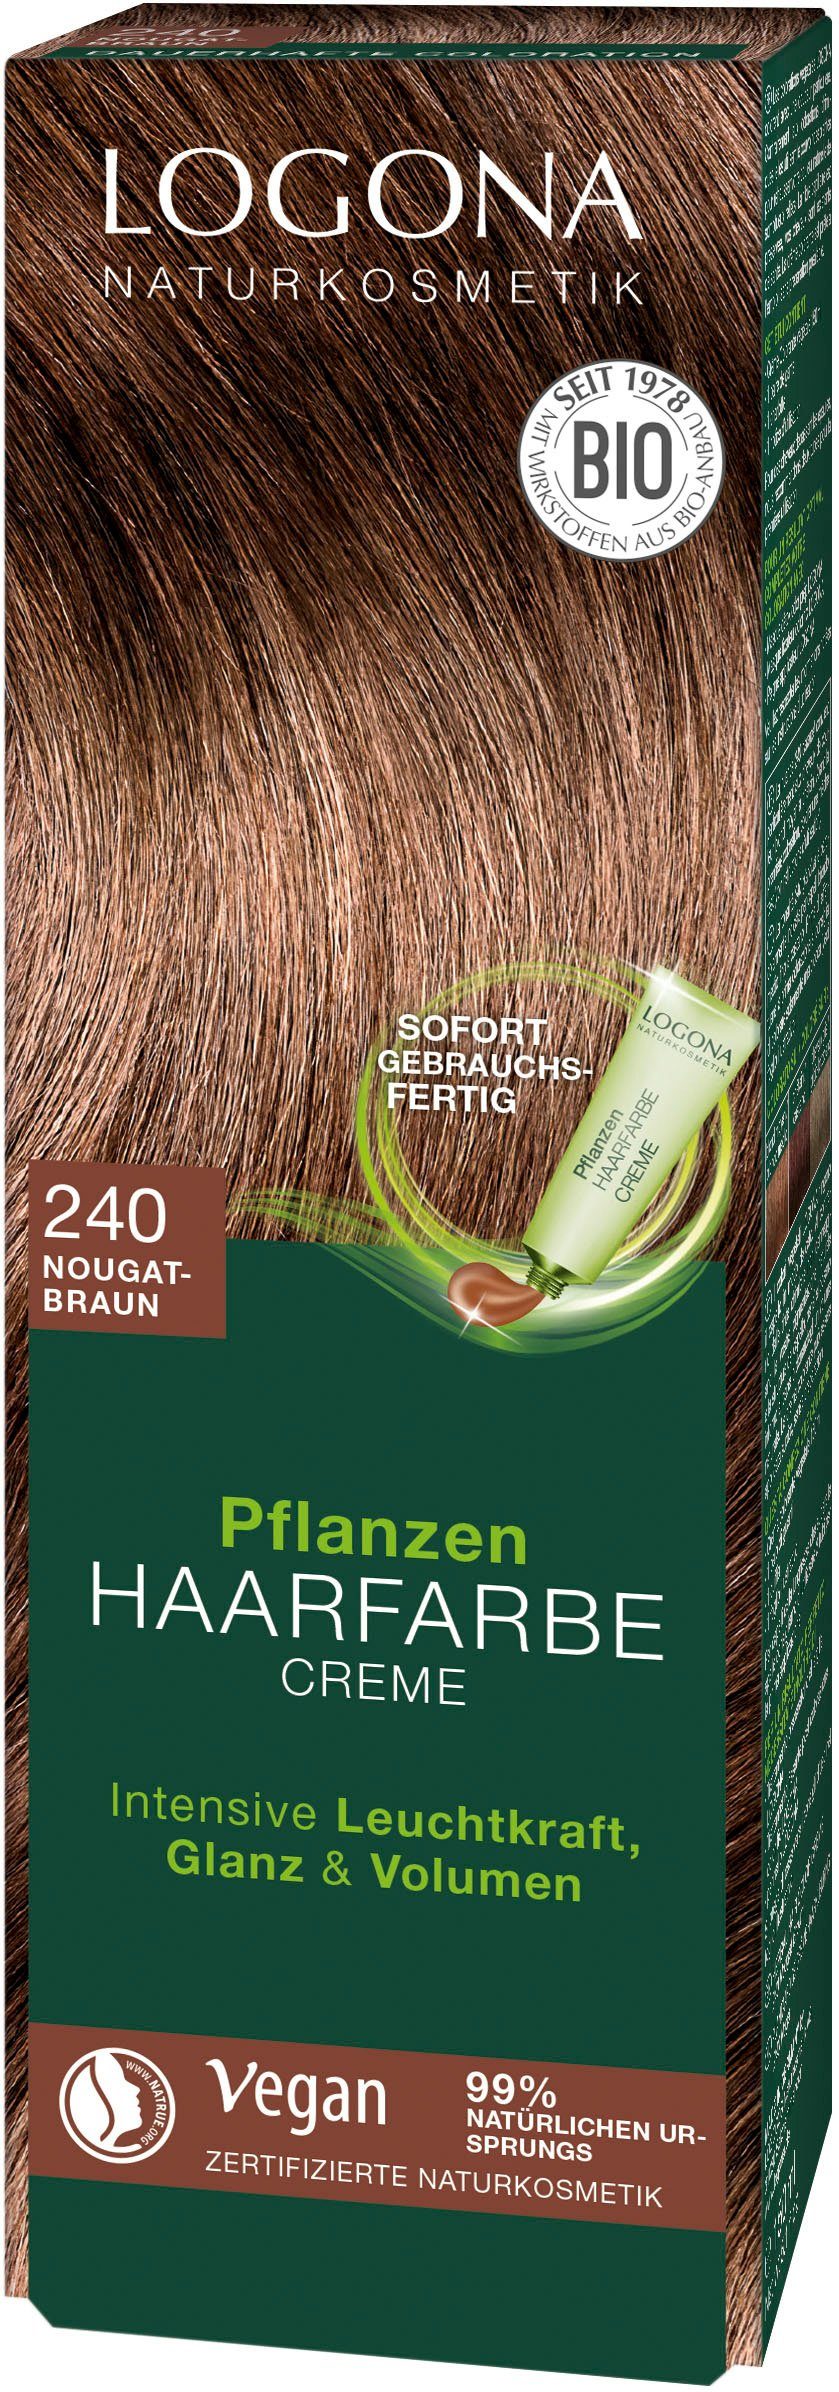 LOGONA Haarfarbe Logona Pflanzen-Haarfarbe Creme 240 nougatbraun